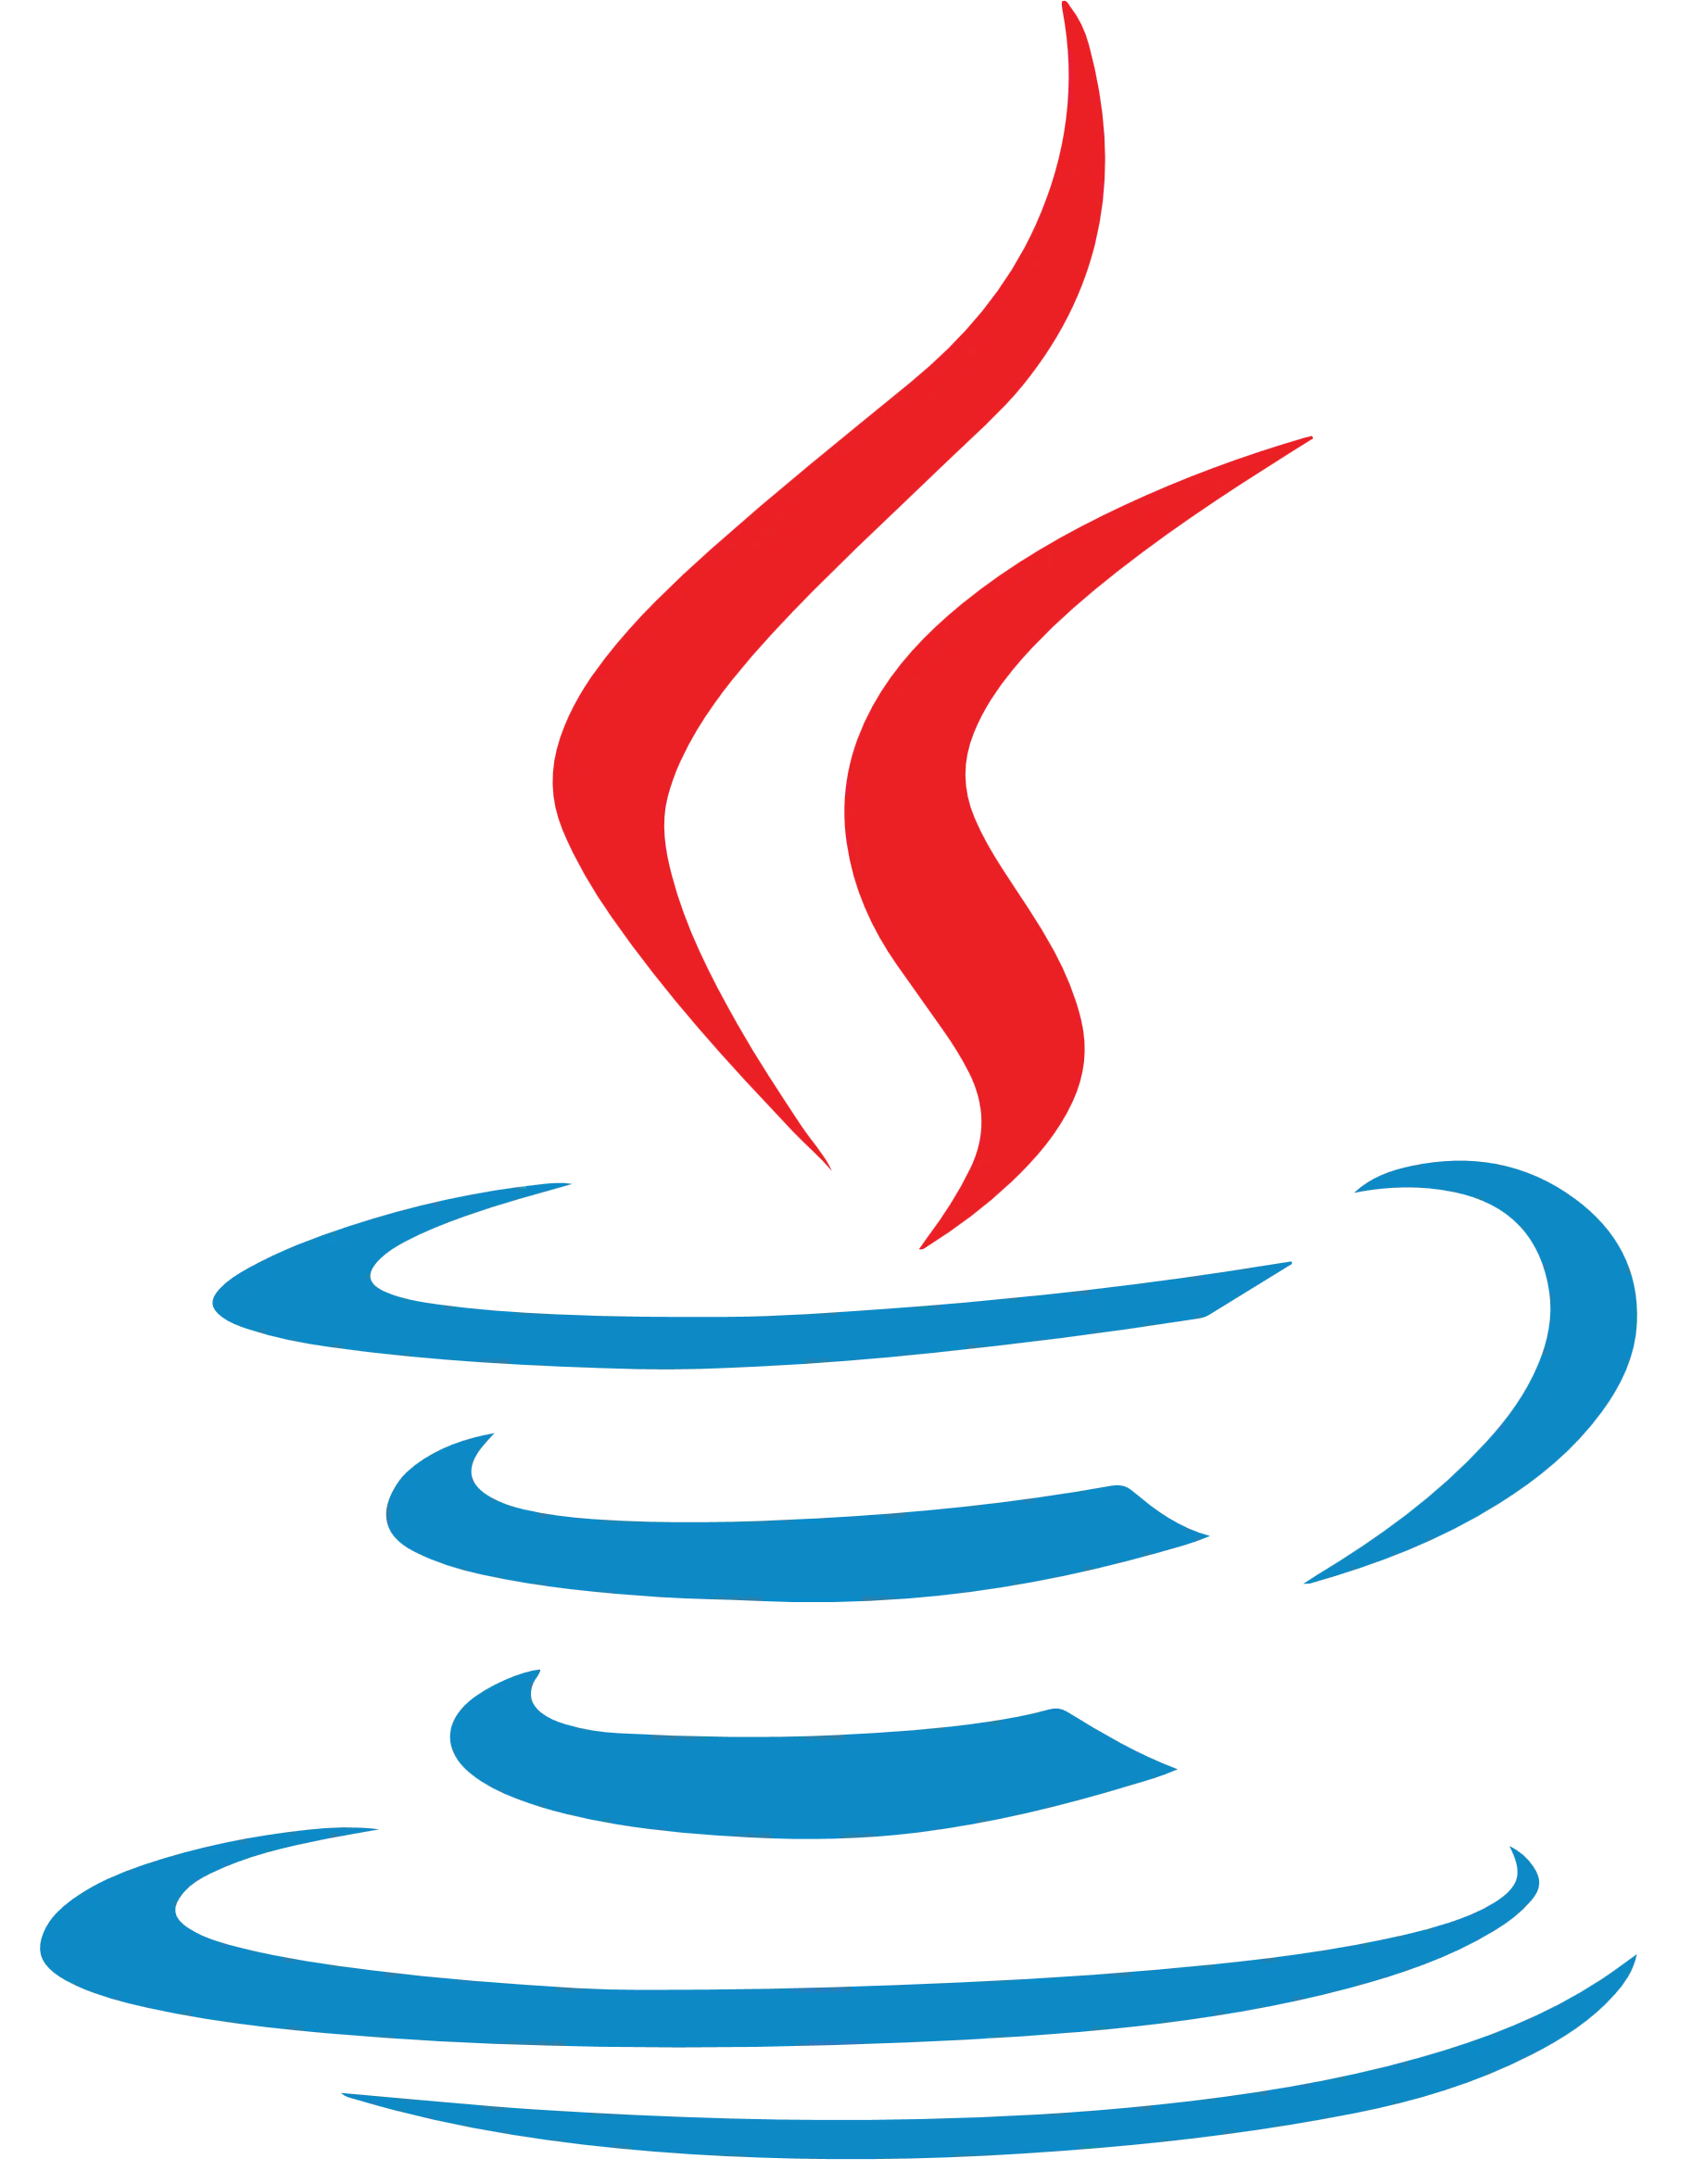 Java Development Company Soft Suave